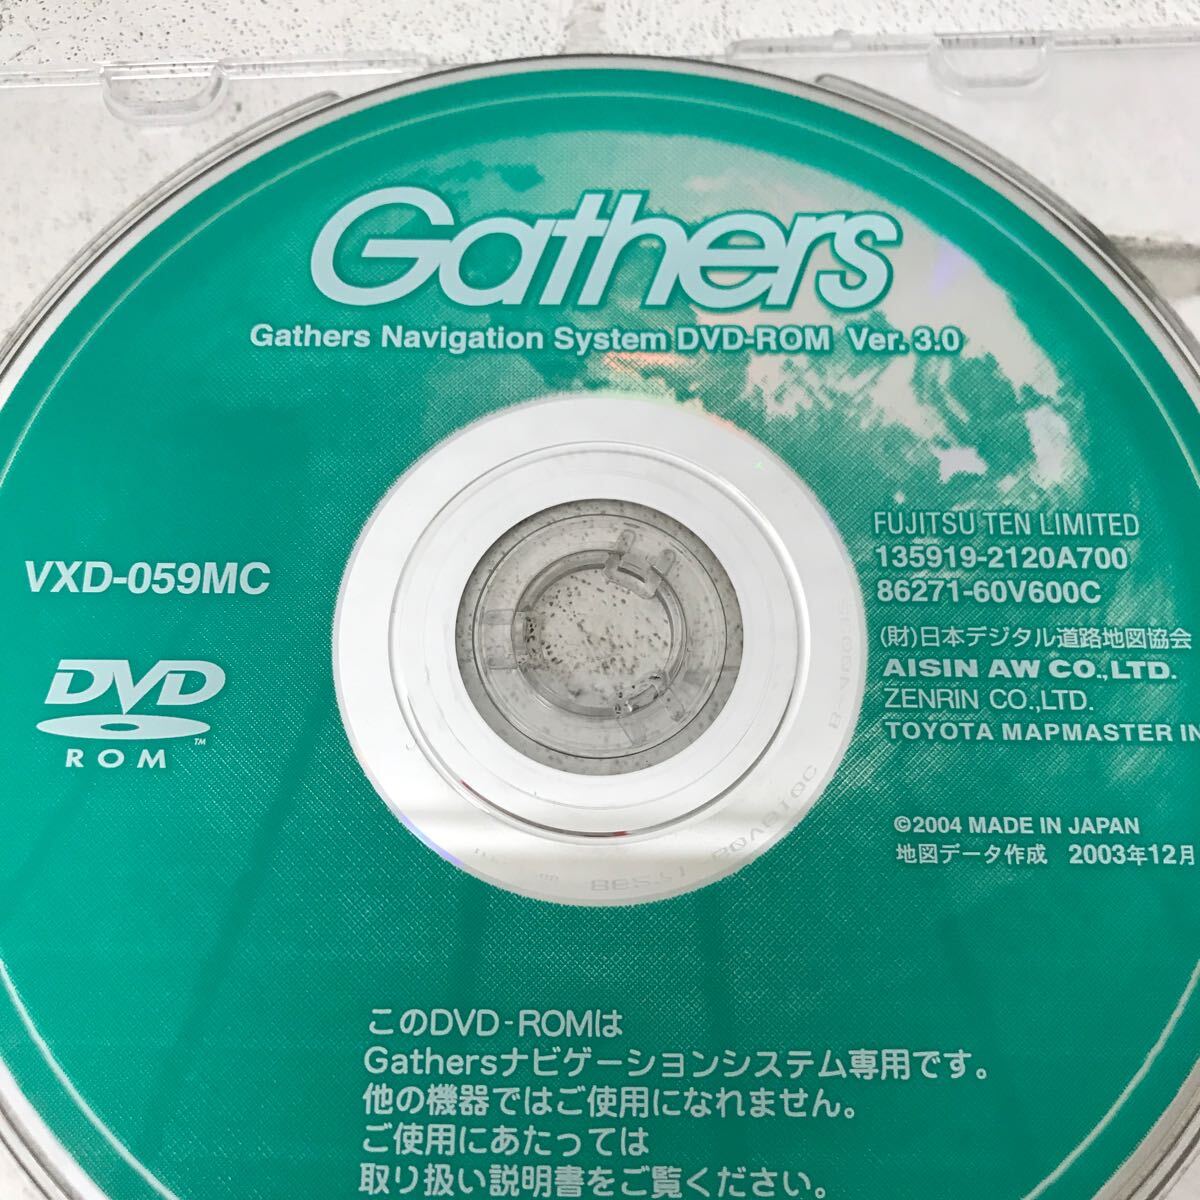 I0320I3 Gathers Navigation System DVD-ROM 5巻セット FUJITSU TEN 日本デジタル道路地図協会 カーナビ ソフトウェアの画像4